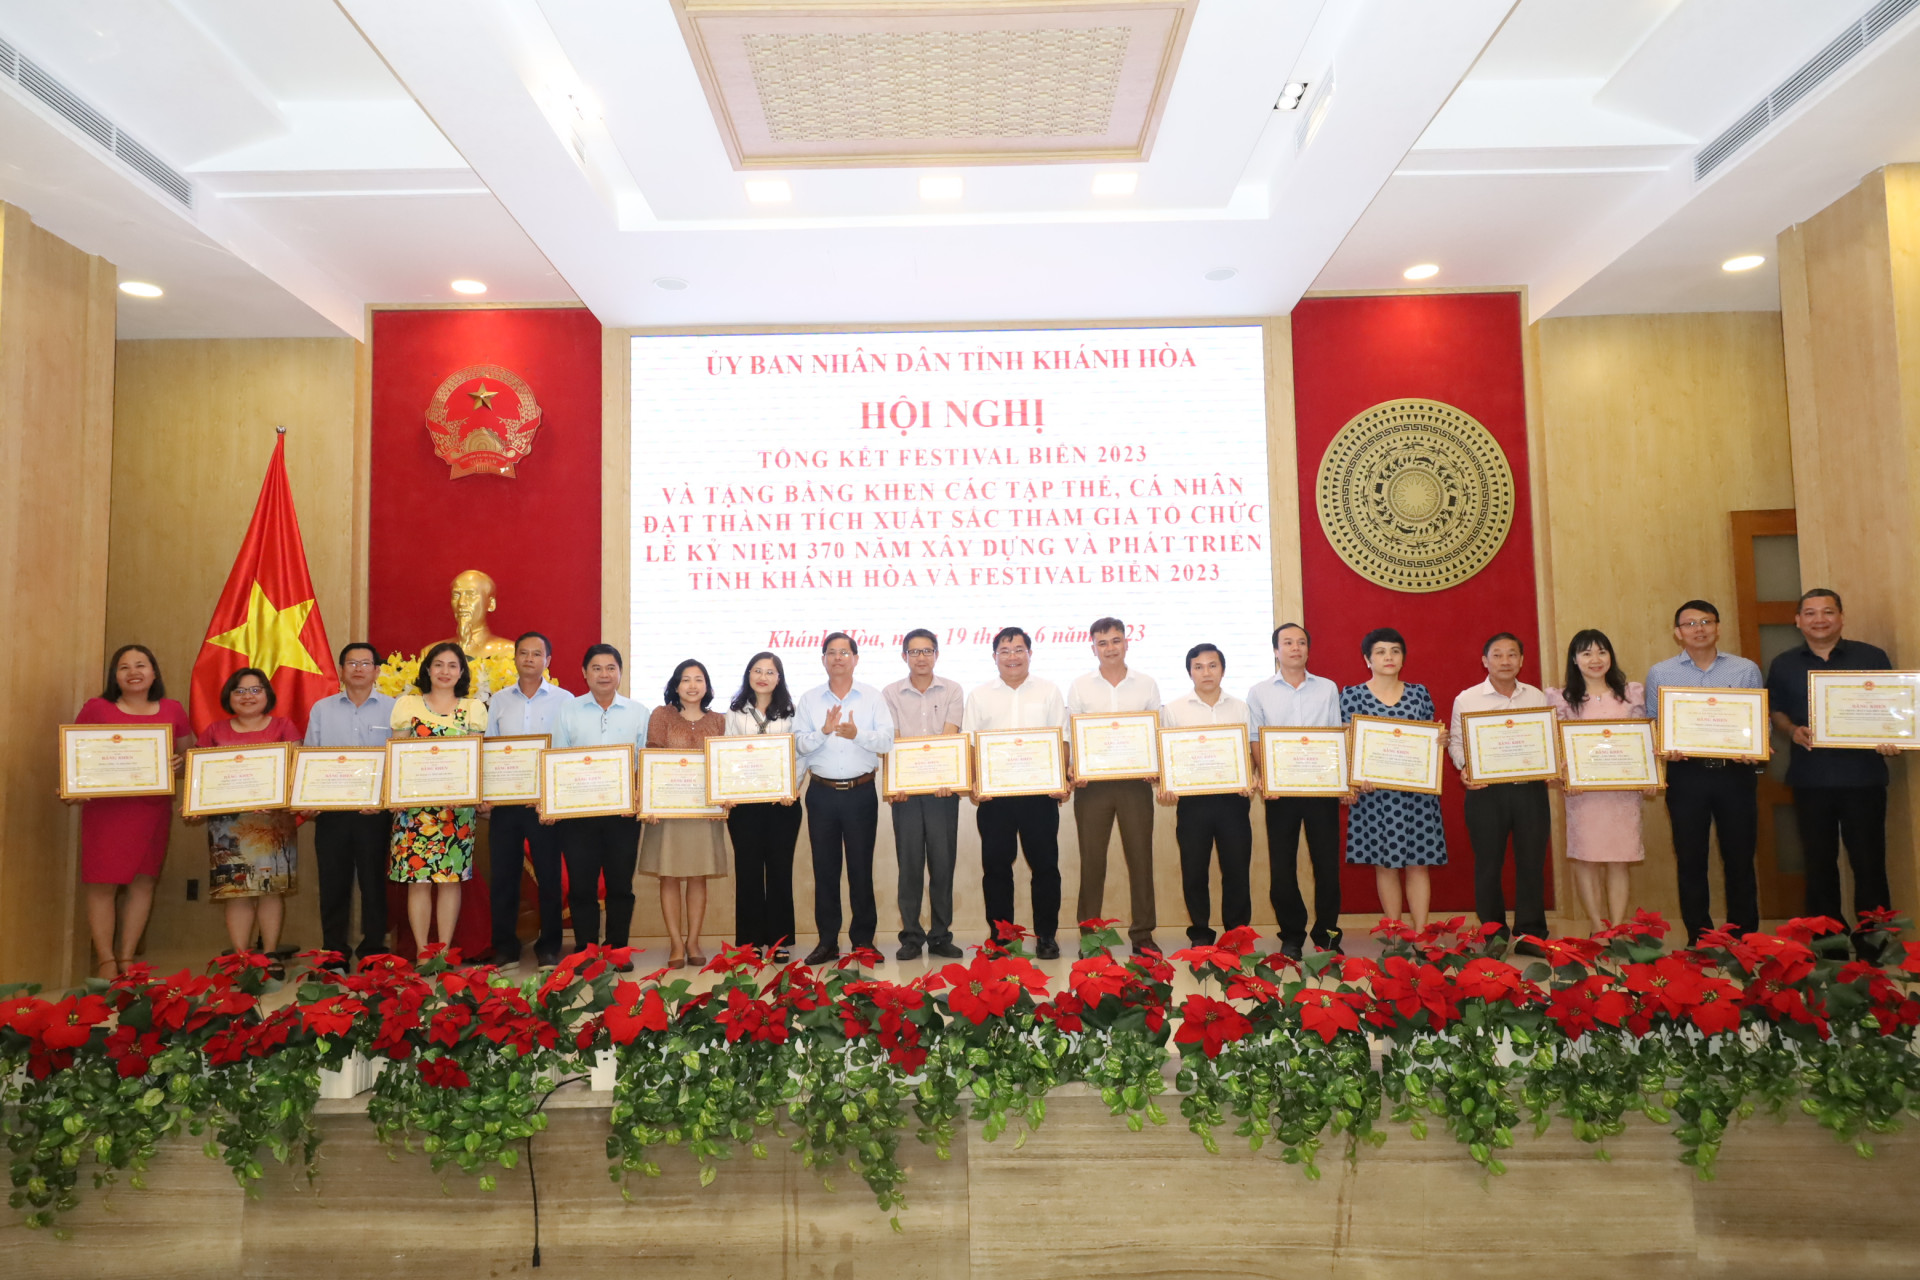 Đồng chí Nguyễn Tấn Tuân trao bằng khen cho các tập thể có thành tích xuất sắc trong thực hiện chương trình Lễ kỷ niệm 370 xây dựng và phát triển tỉnh Khánh Hòa. 